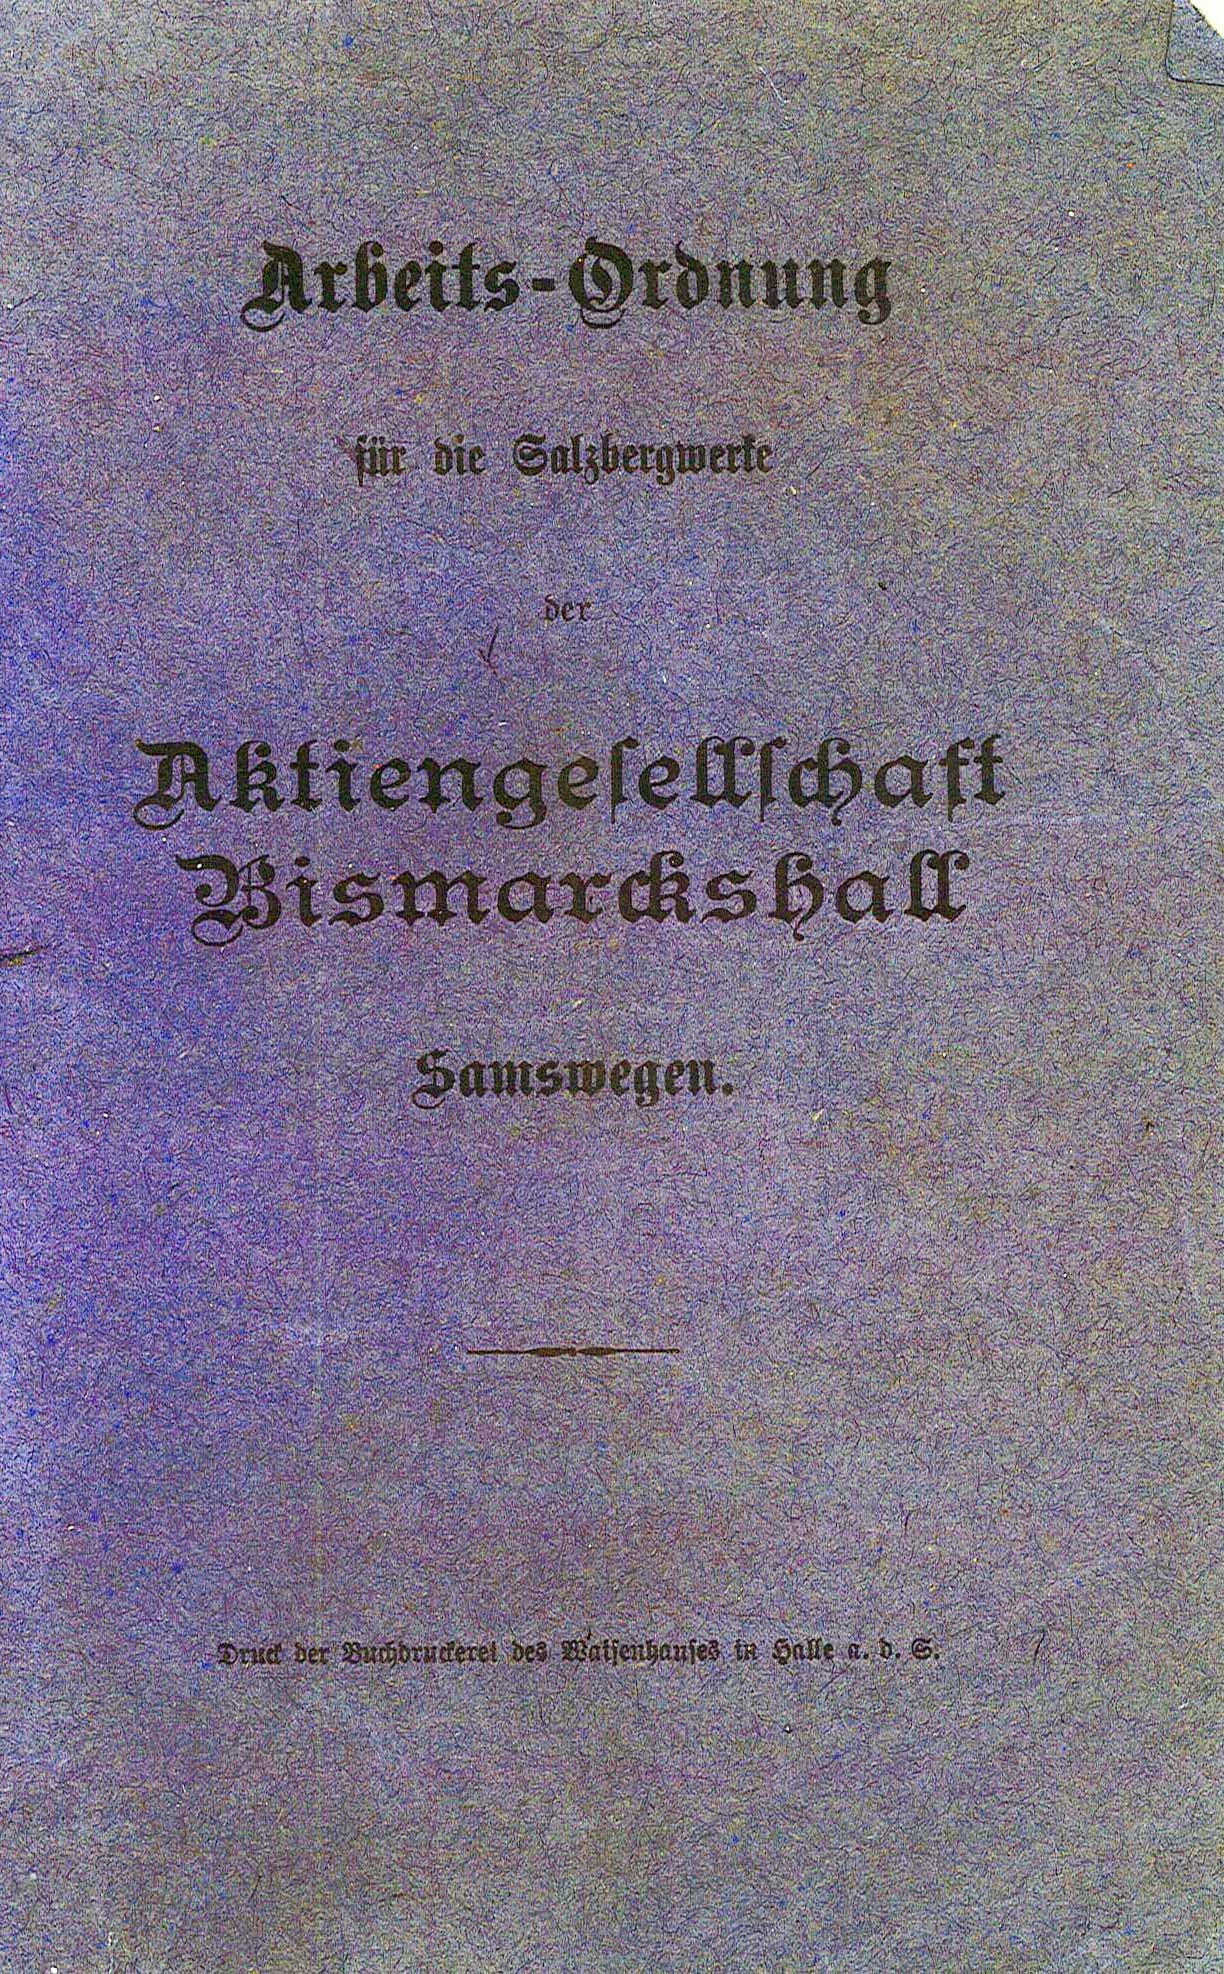 Arbeits-Ordnung für die Salzbergwerke der Aktiengesellschaft Bismarckshall Samswegen, 1909 (Museum Wolmirstedt RR-F)